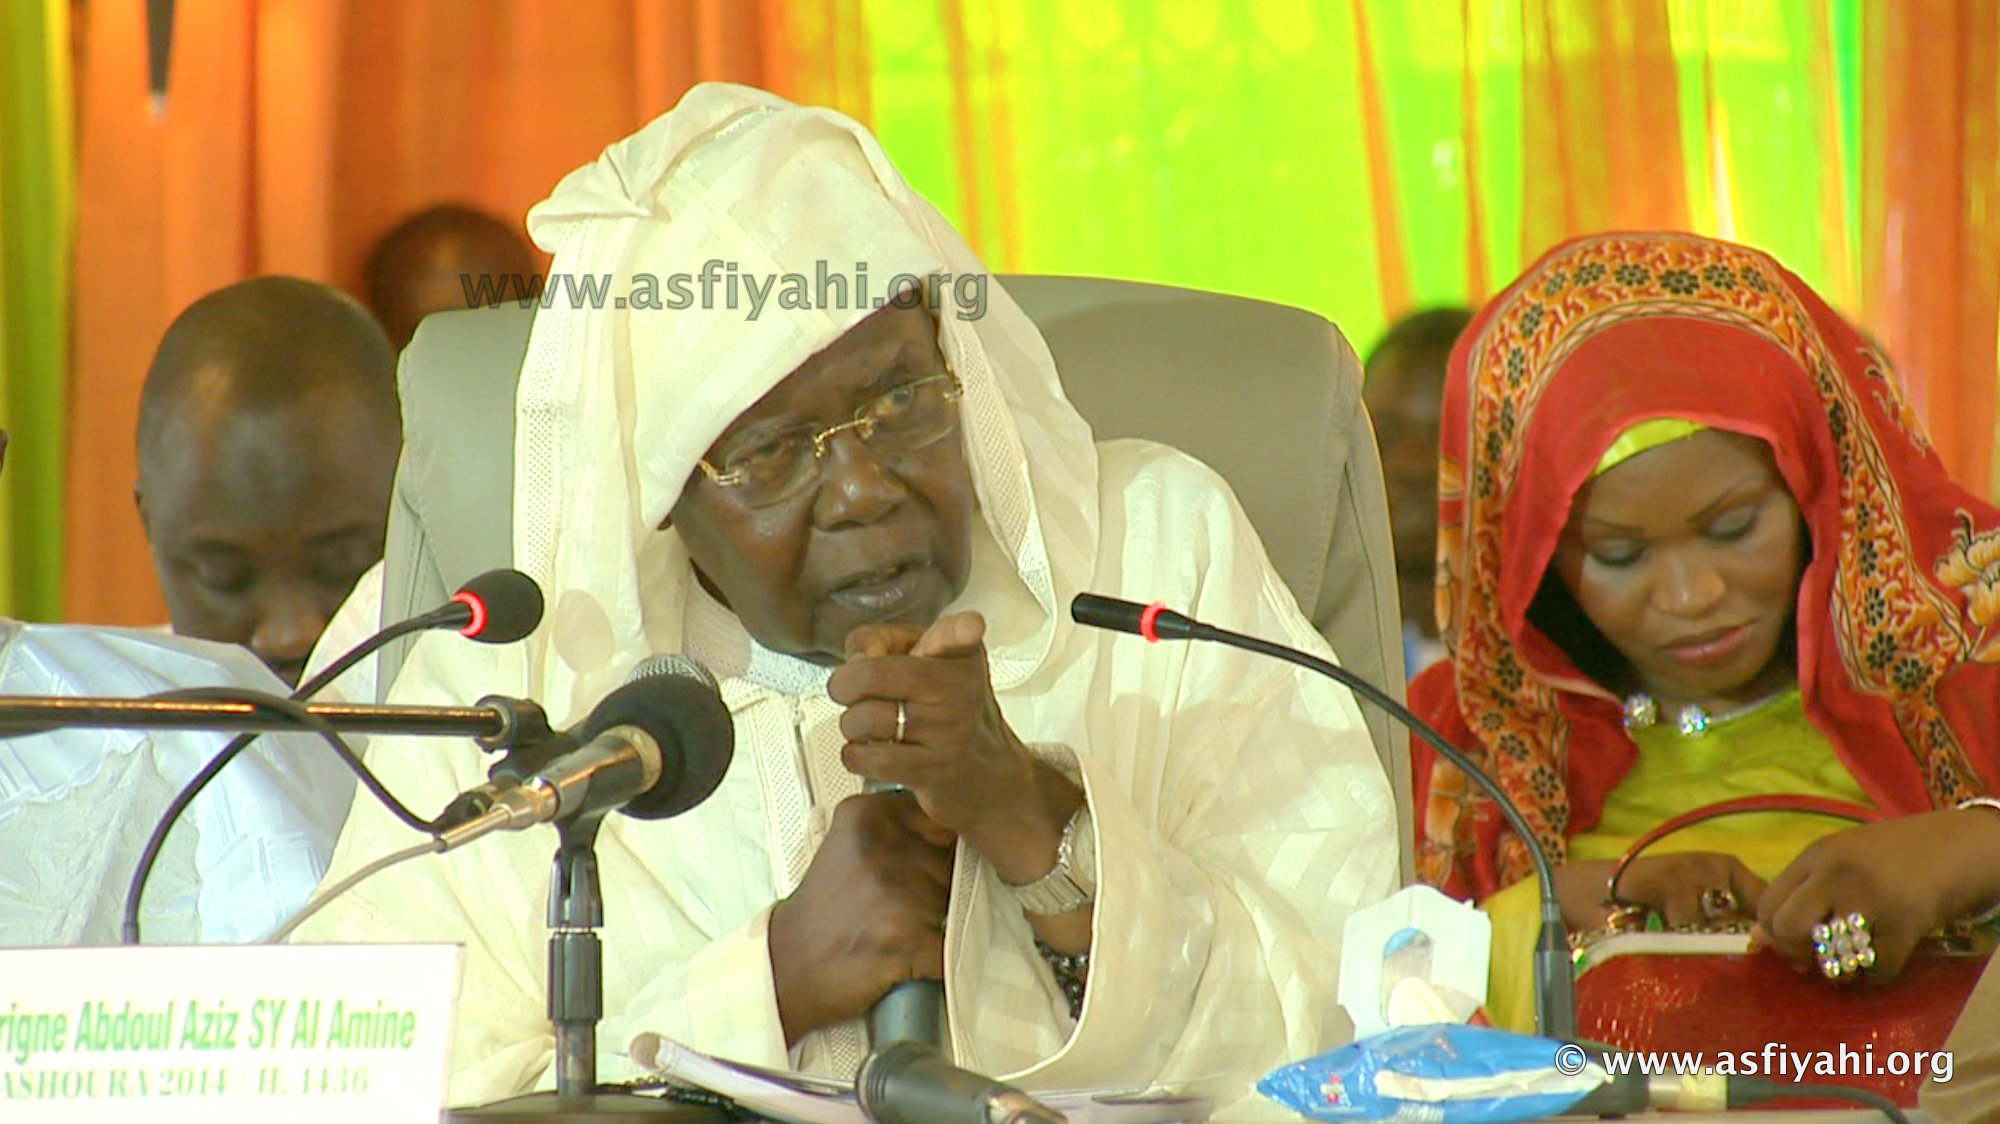 REPORTAGE - ACHOURA 2014 A TIVAOUANE: L'Adresse de Serigne Abdoul Aziz Sy Al Amine à la Jeunesse Musulmane du Senegal (Photos et Vidéos)